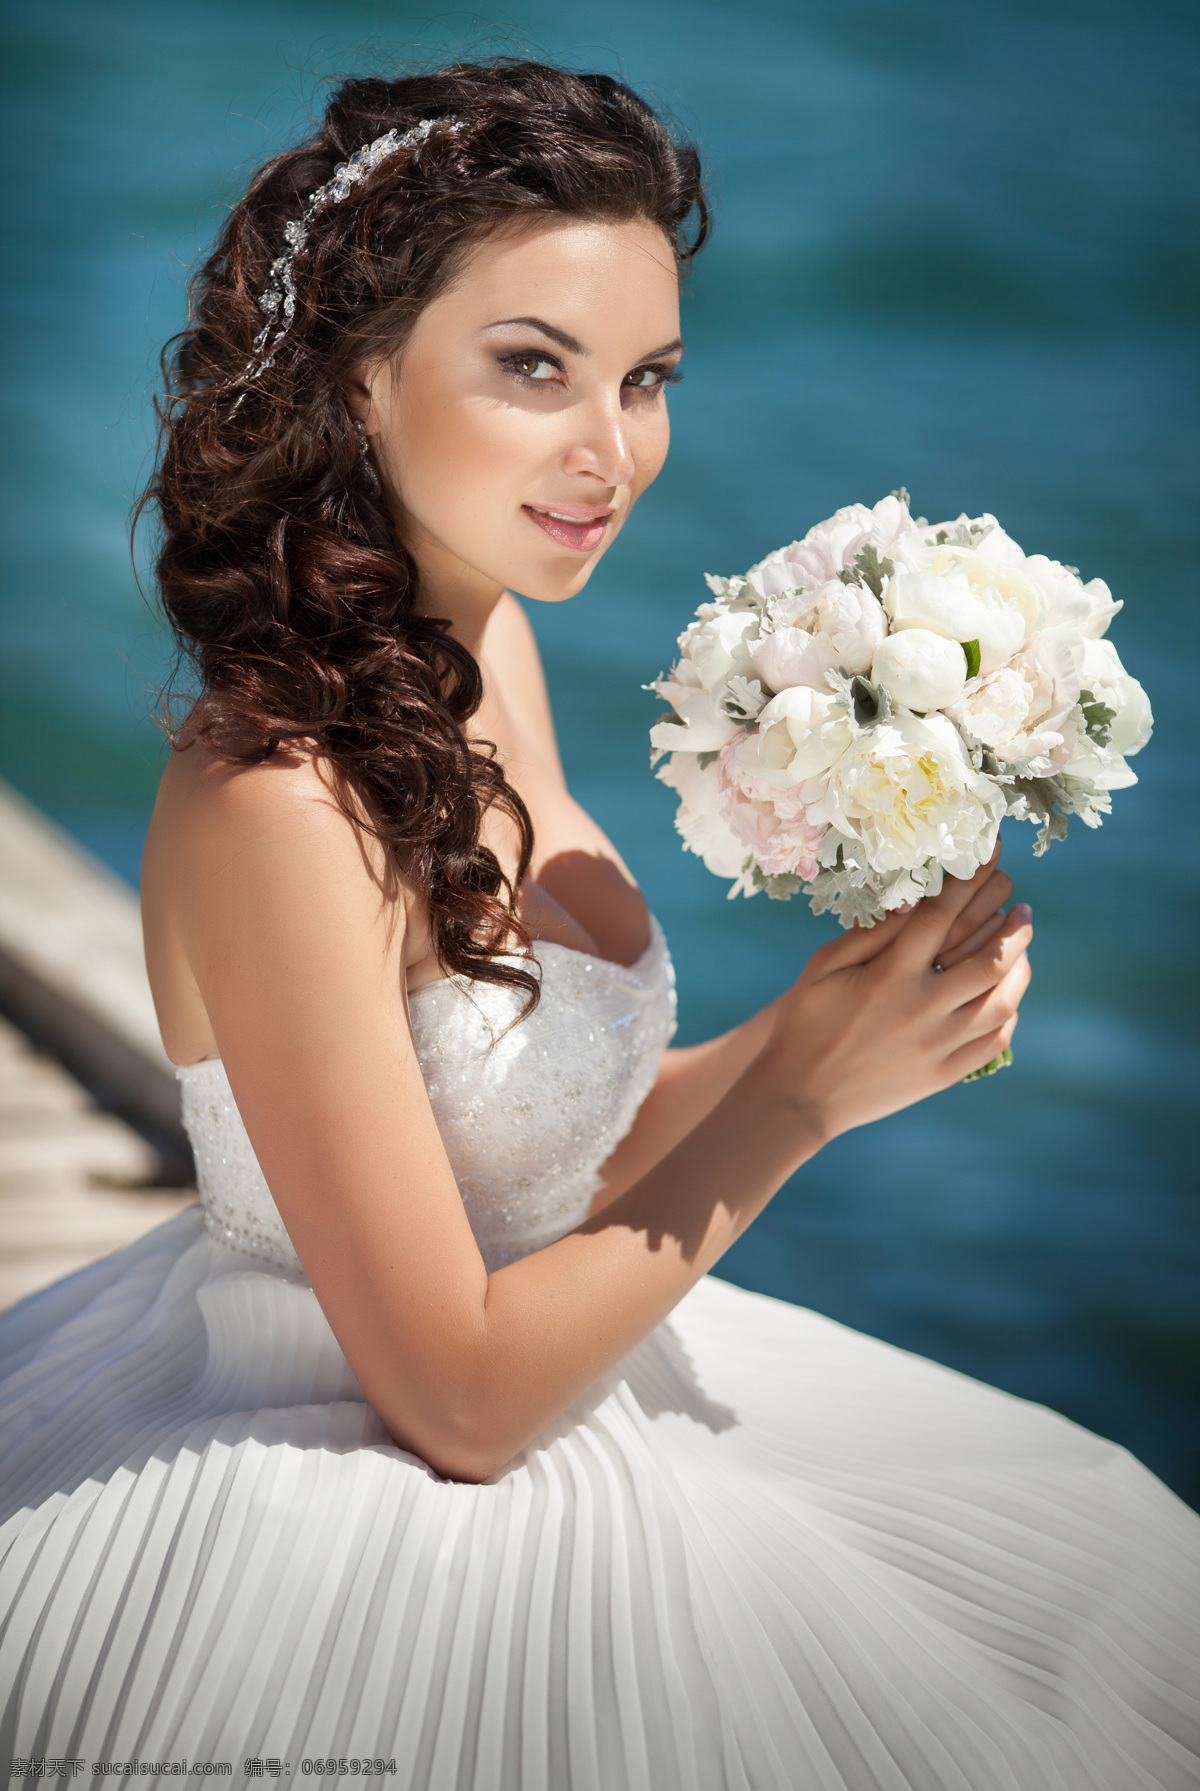 手 鲜花 漂亮 新娘 人物 女人 情侣图片 人物图片